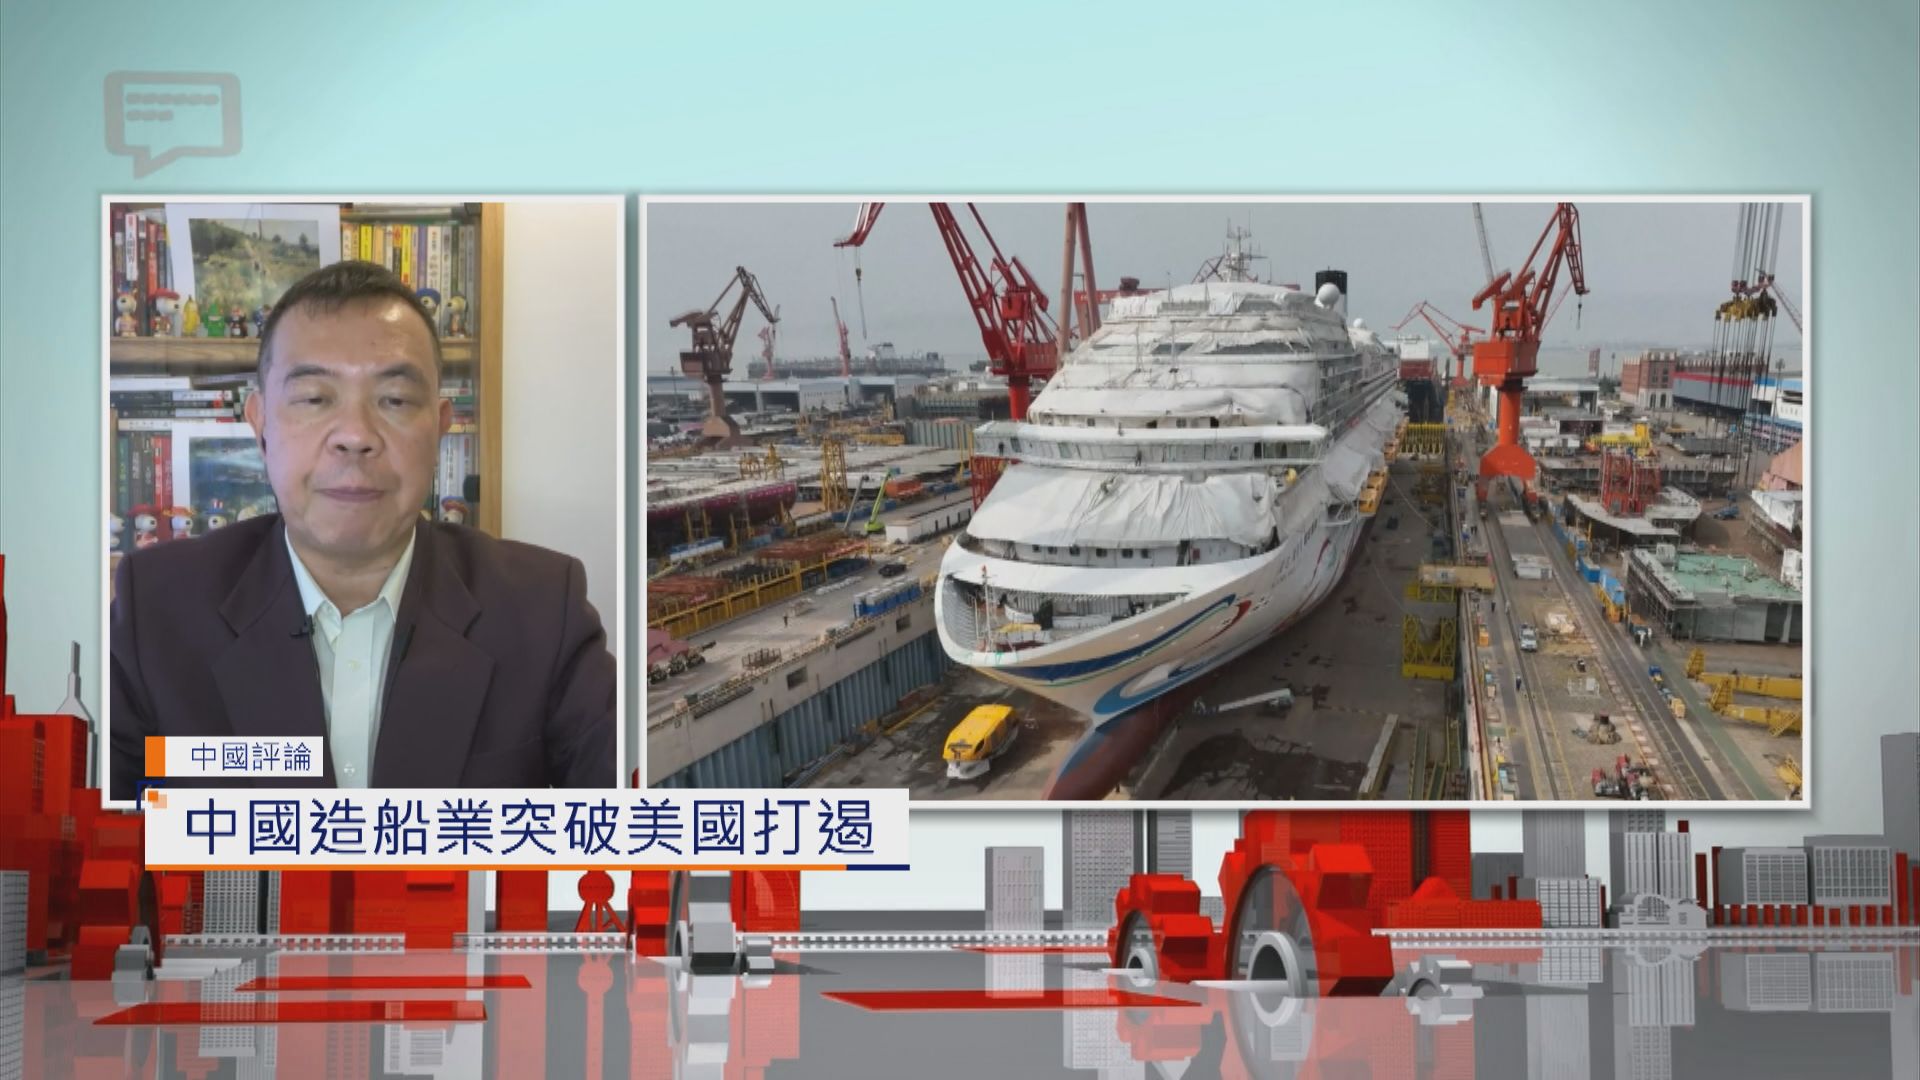 【中國評論】中國造船業突破美國打遏